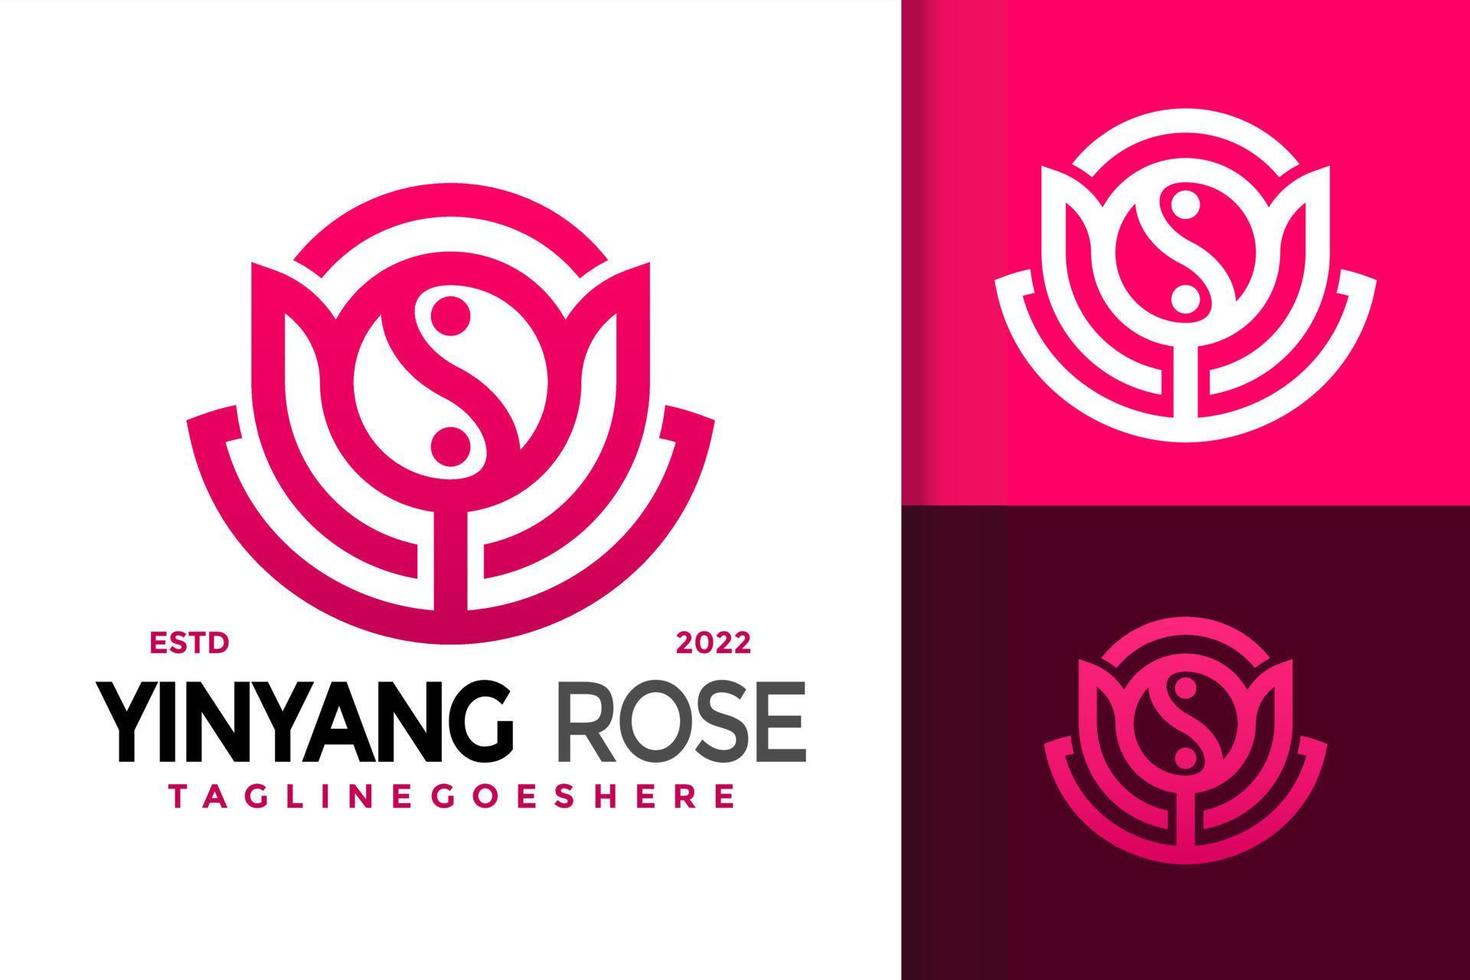 création de logo rose yinyang, vecteur de logos d'identité de marque, logo moderne, modèle d'illustration vectorielle de conceptions de logo